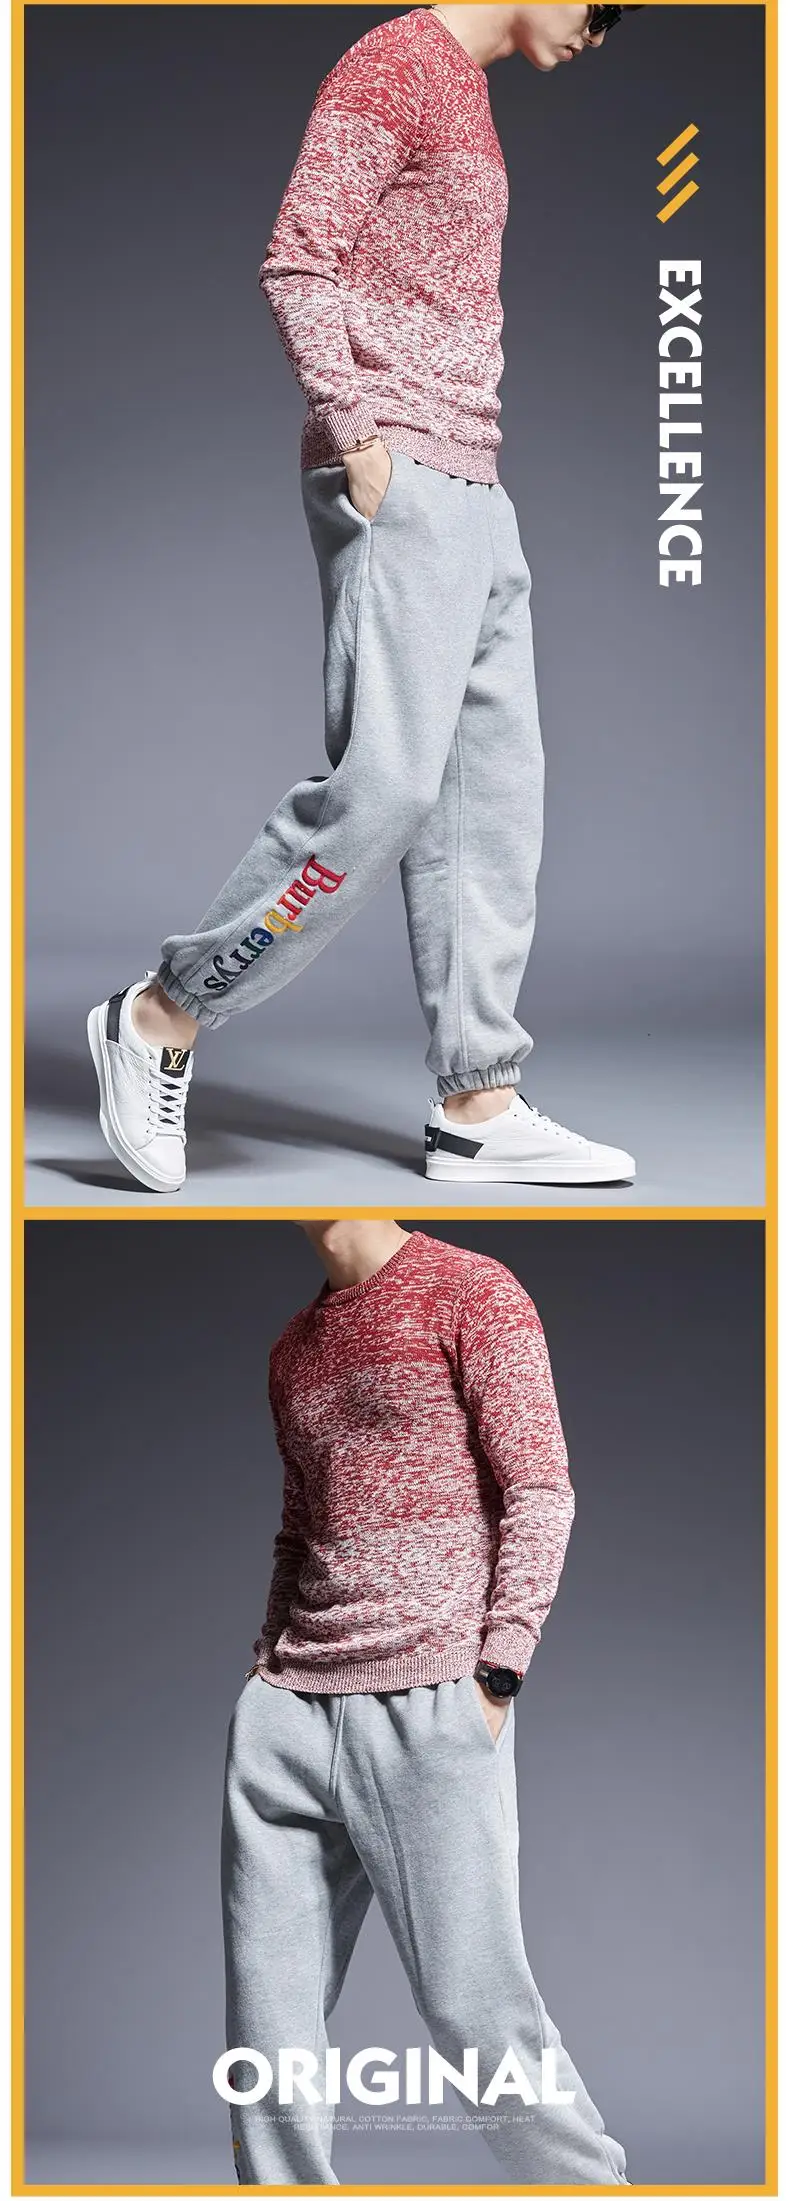 2019 новый модный брендовый свитер мужские пуловеры с круглым вырезом Slim Fit Джемперы Knitred Топ класс зима корейский стиль повседневная мужская